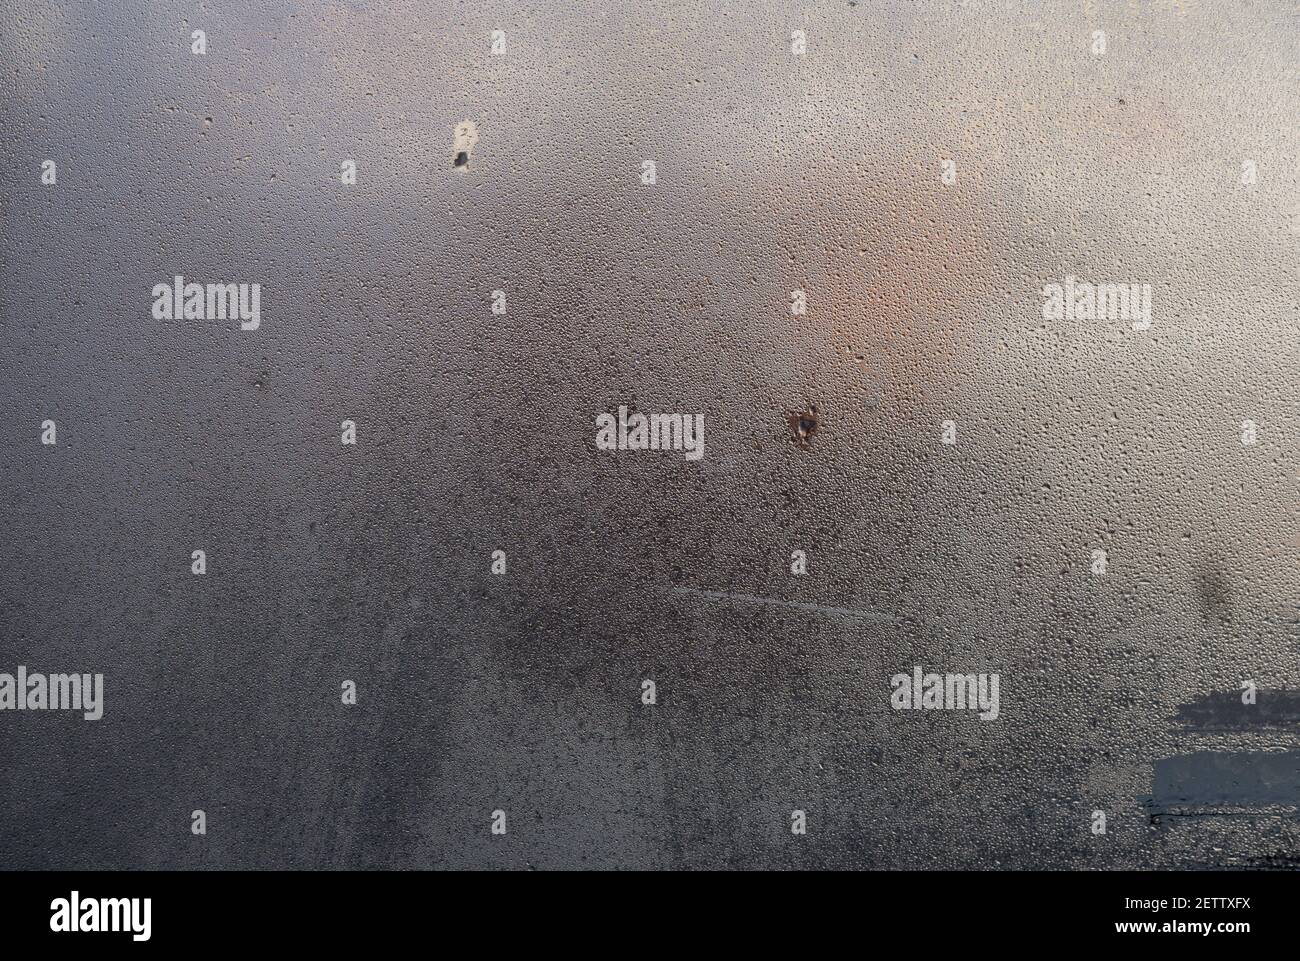 Problèmes de condensation d'humidité. Vapeur d'eau chaude condensée sur la vitre froide Banque D'Images